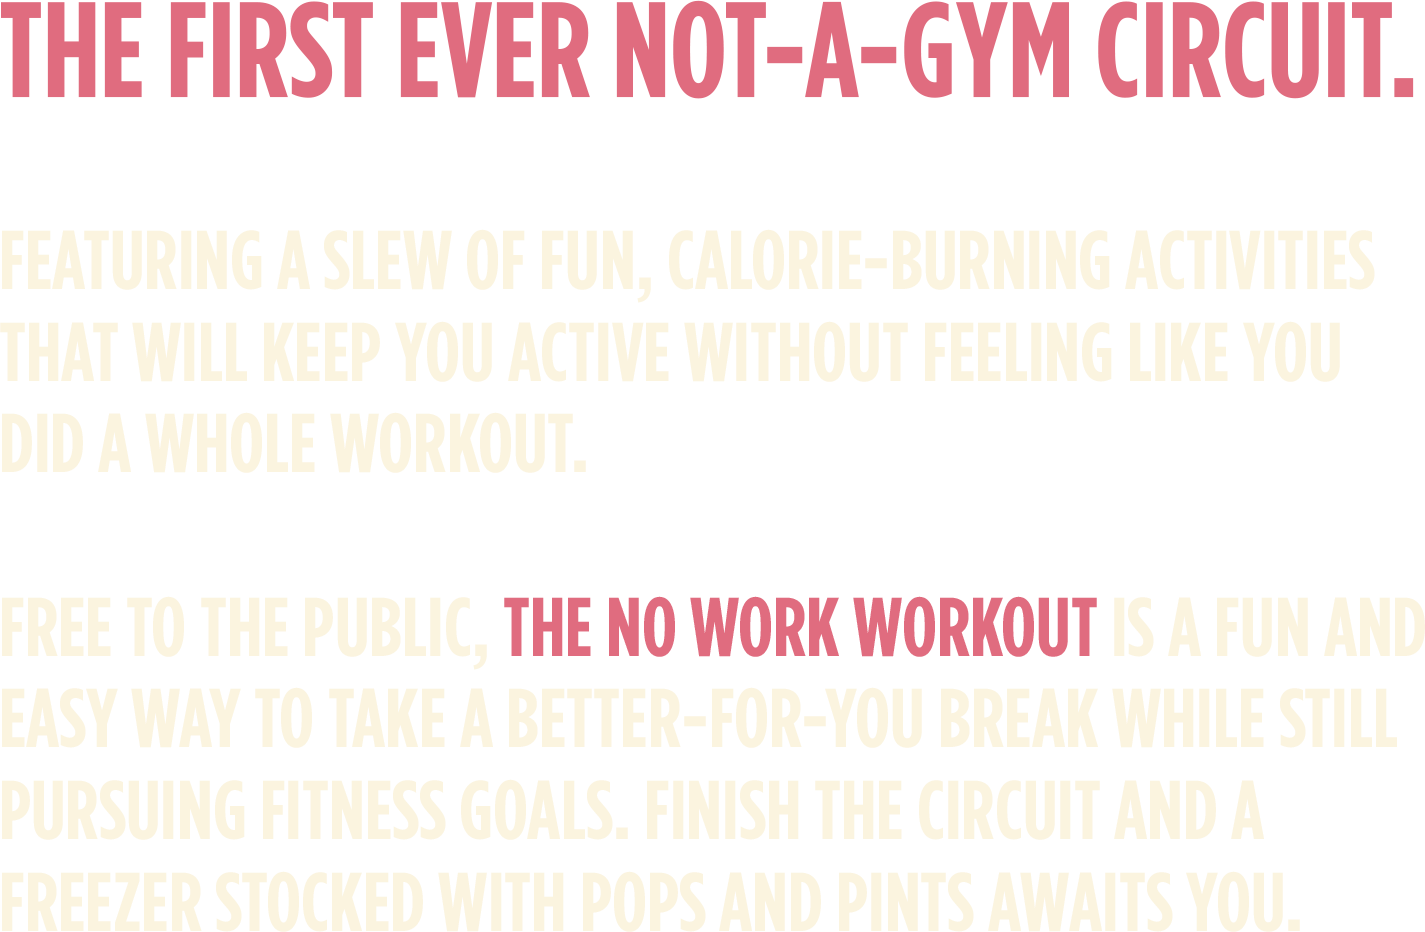 No Work Workout Description